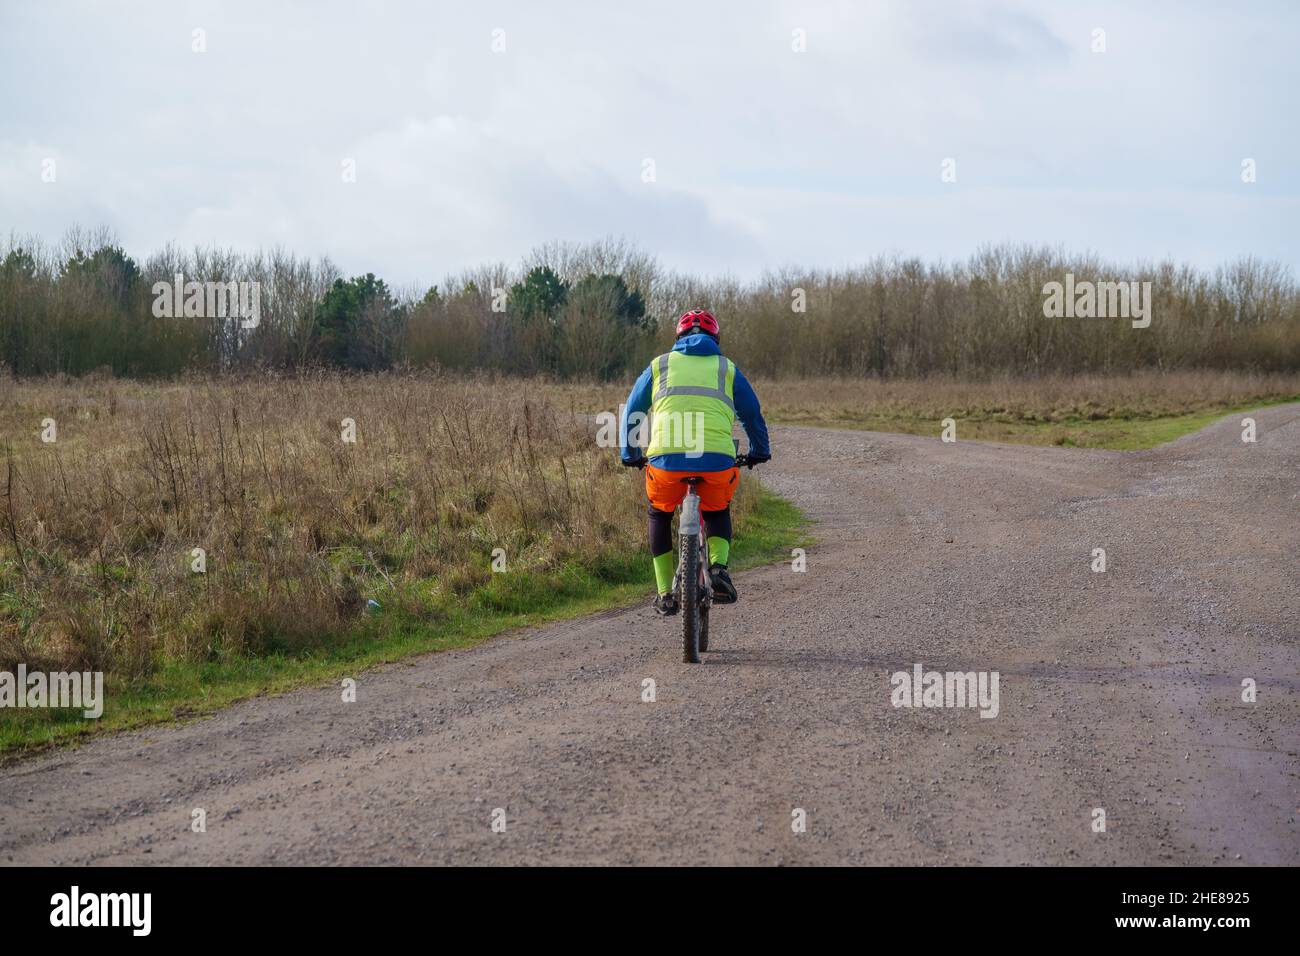 Un ciclista informal que lleva una chaqueta amarilla de alta visibilidad en una pista de piedra que cruza la llanura de salisbury, Wiltshire UK Foto de stock